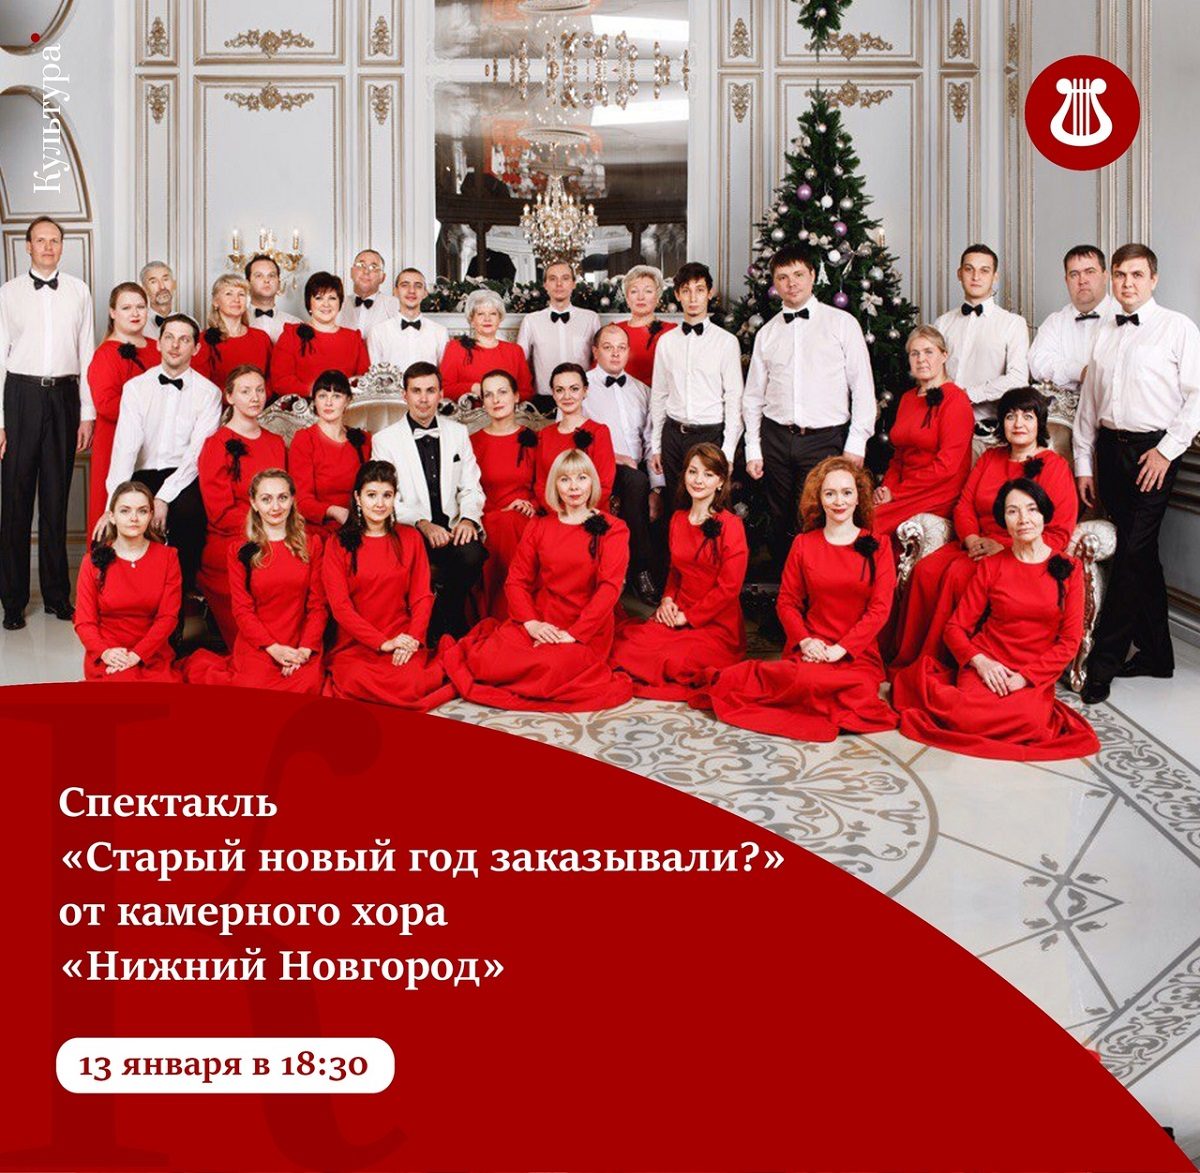 Нижегородский камерный хор представит праздничный спектакль «Старый новый год заказывали?»